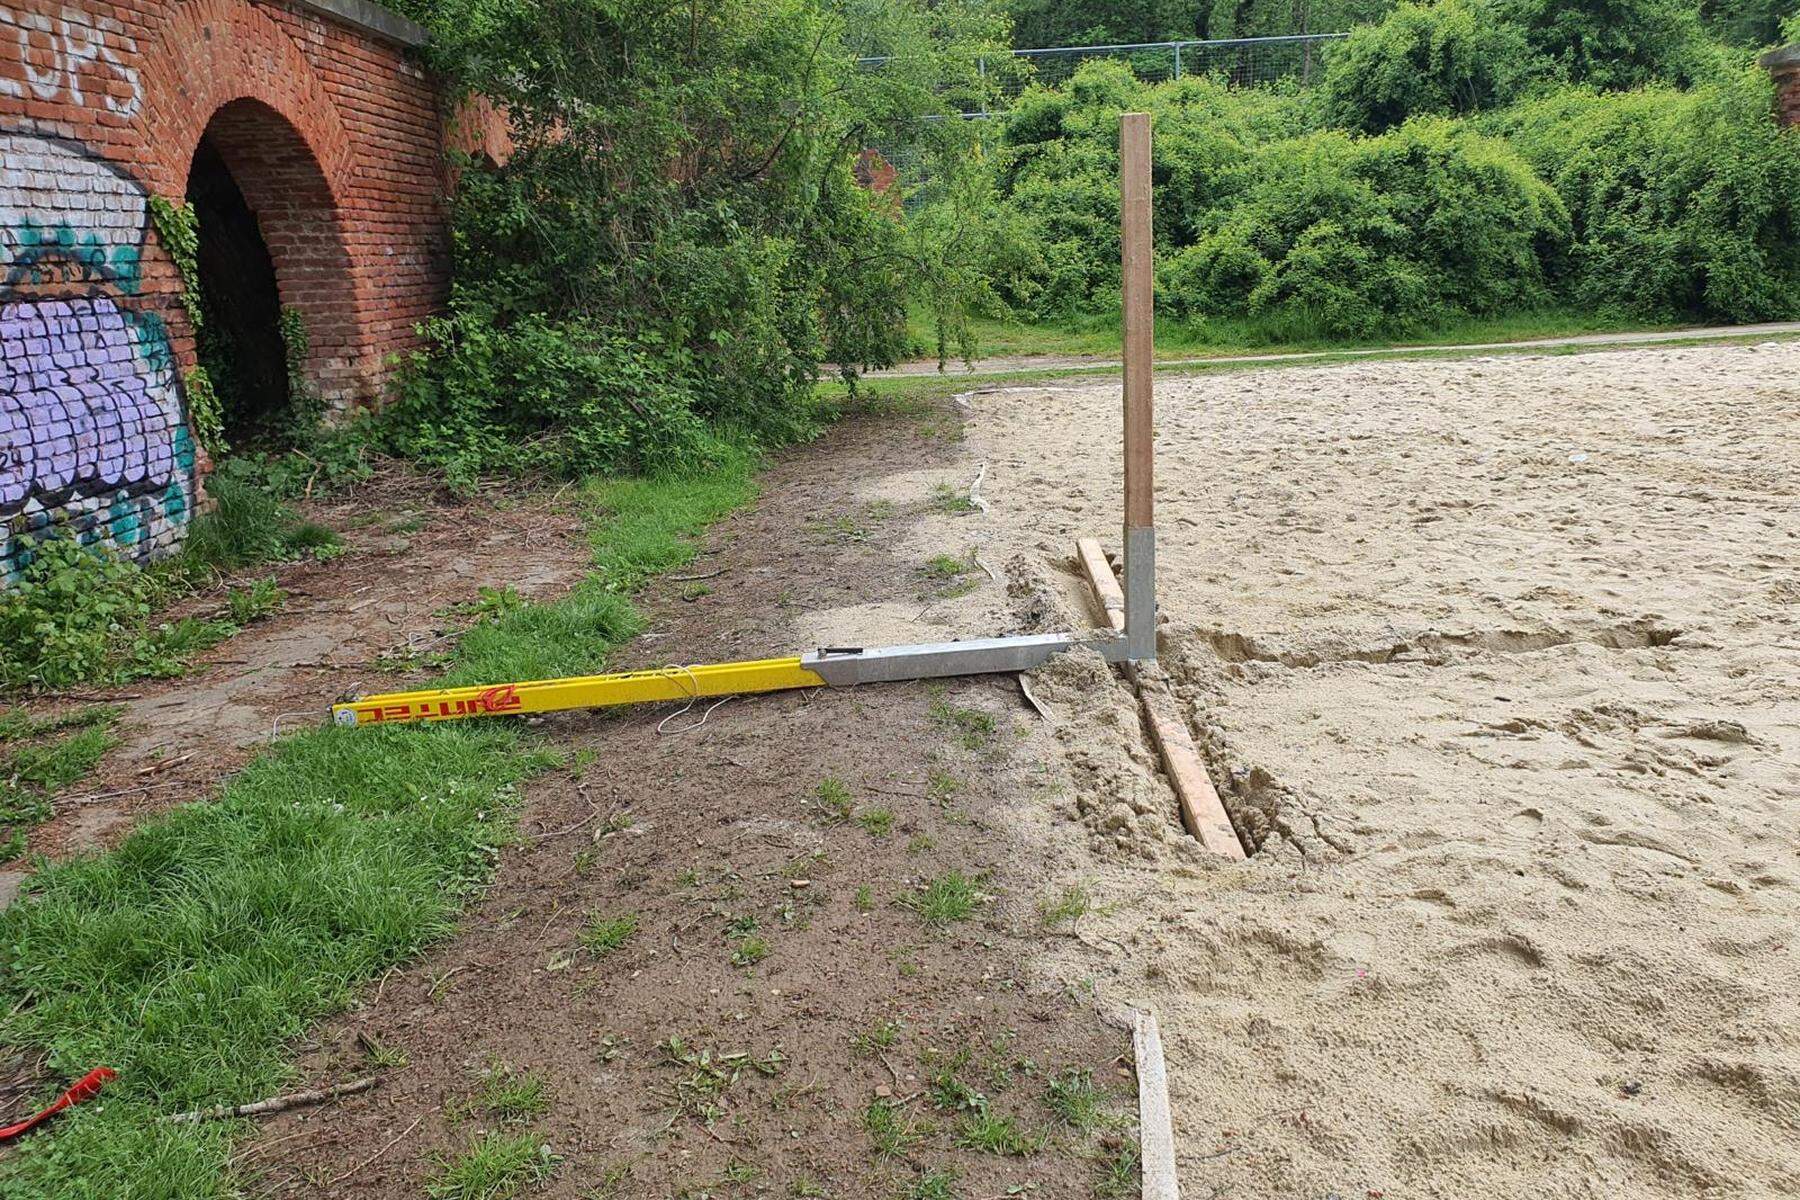 Eustacchiogründe: Volleyballfeld zum zweiten Mal zerstört: Stadt erstattet Anzeige